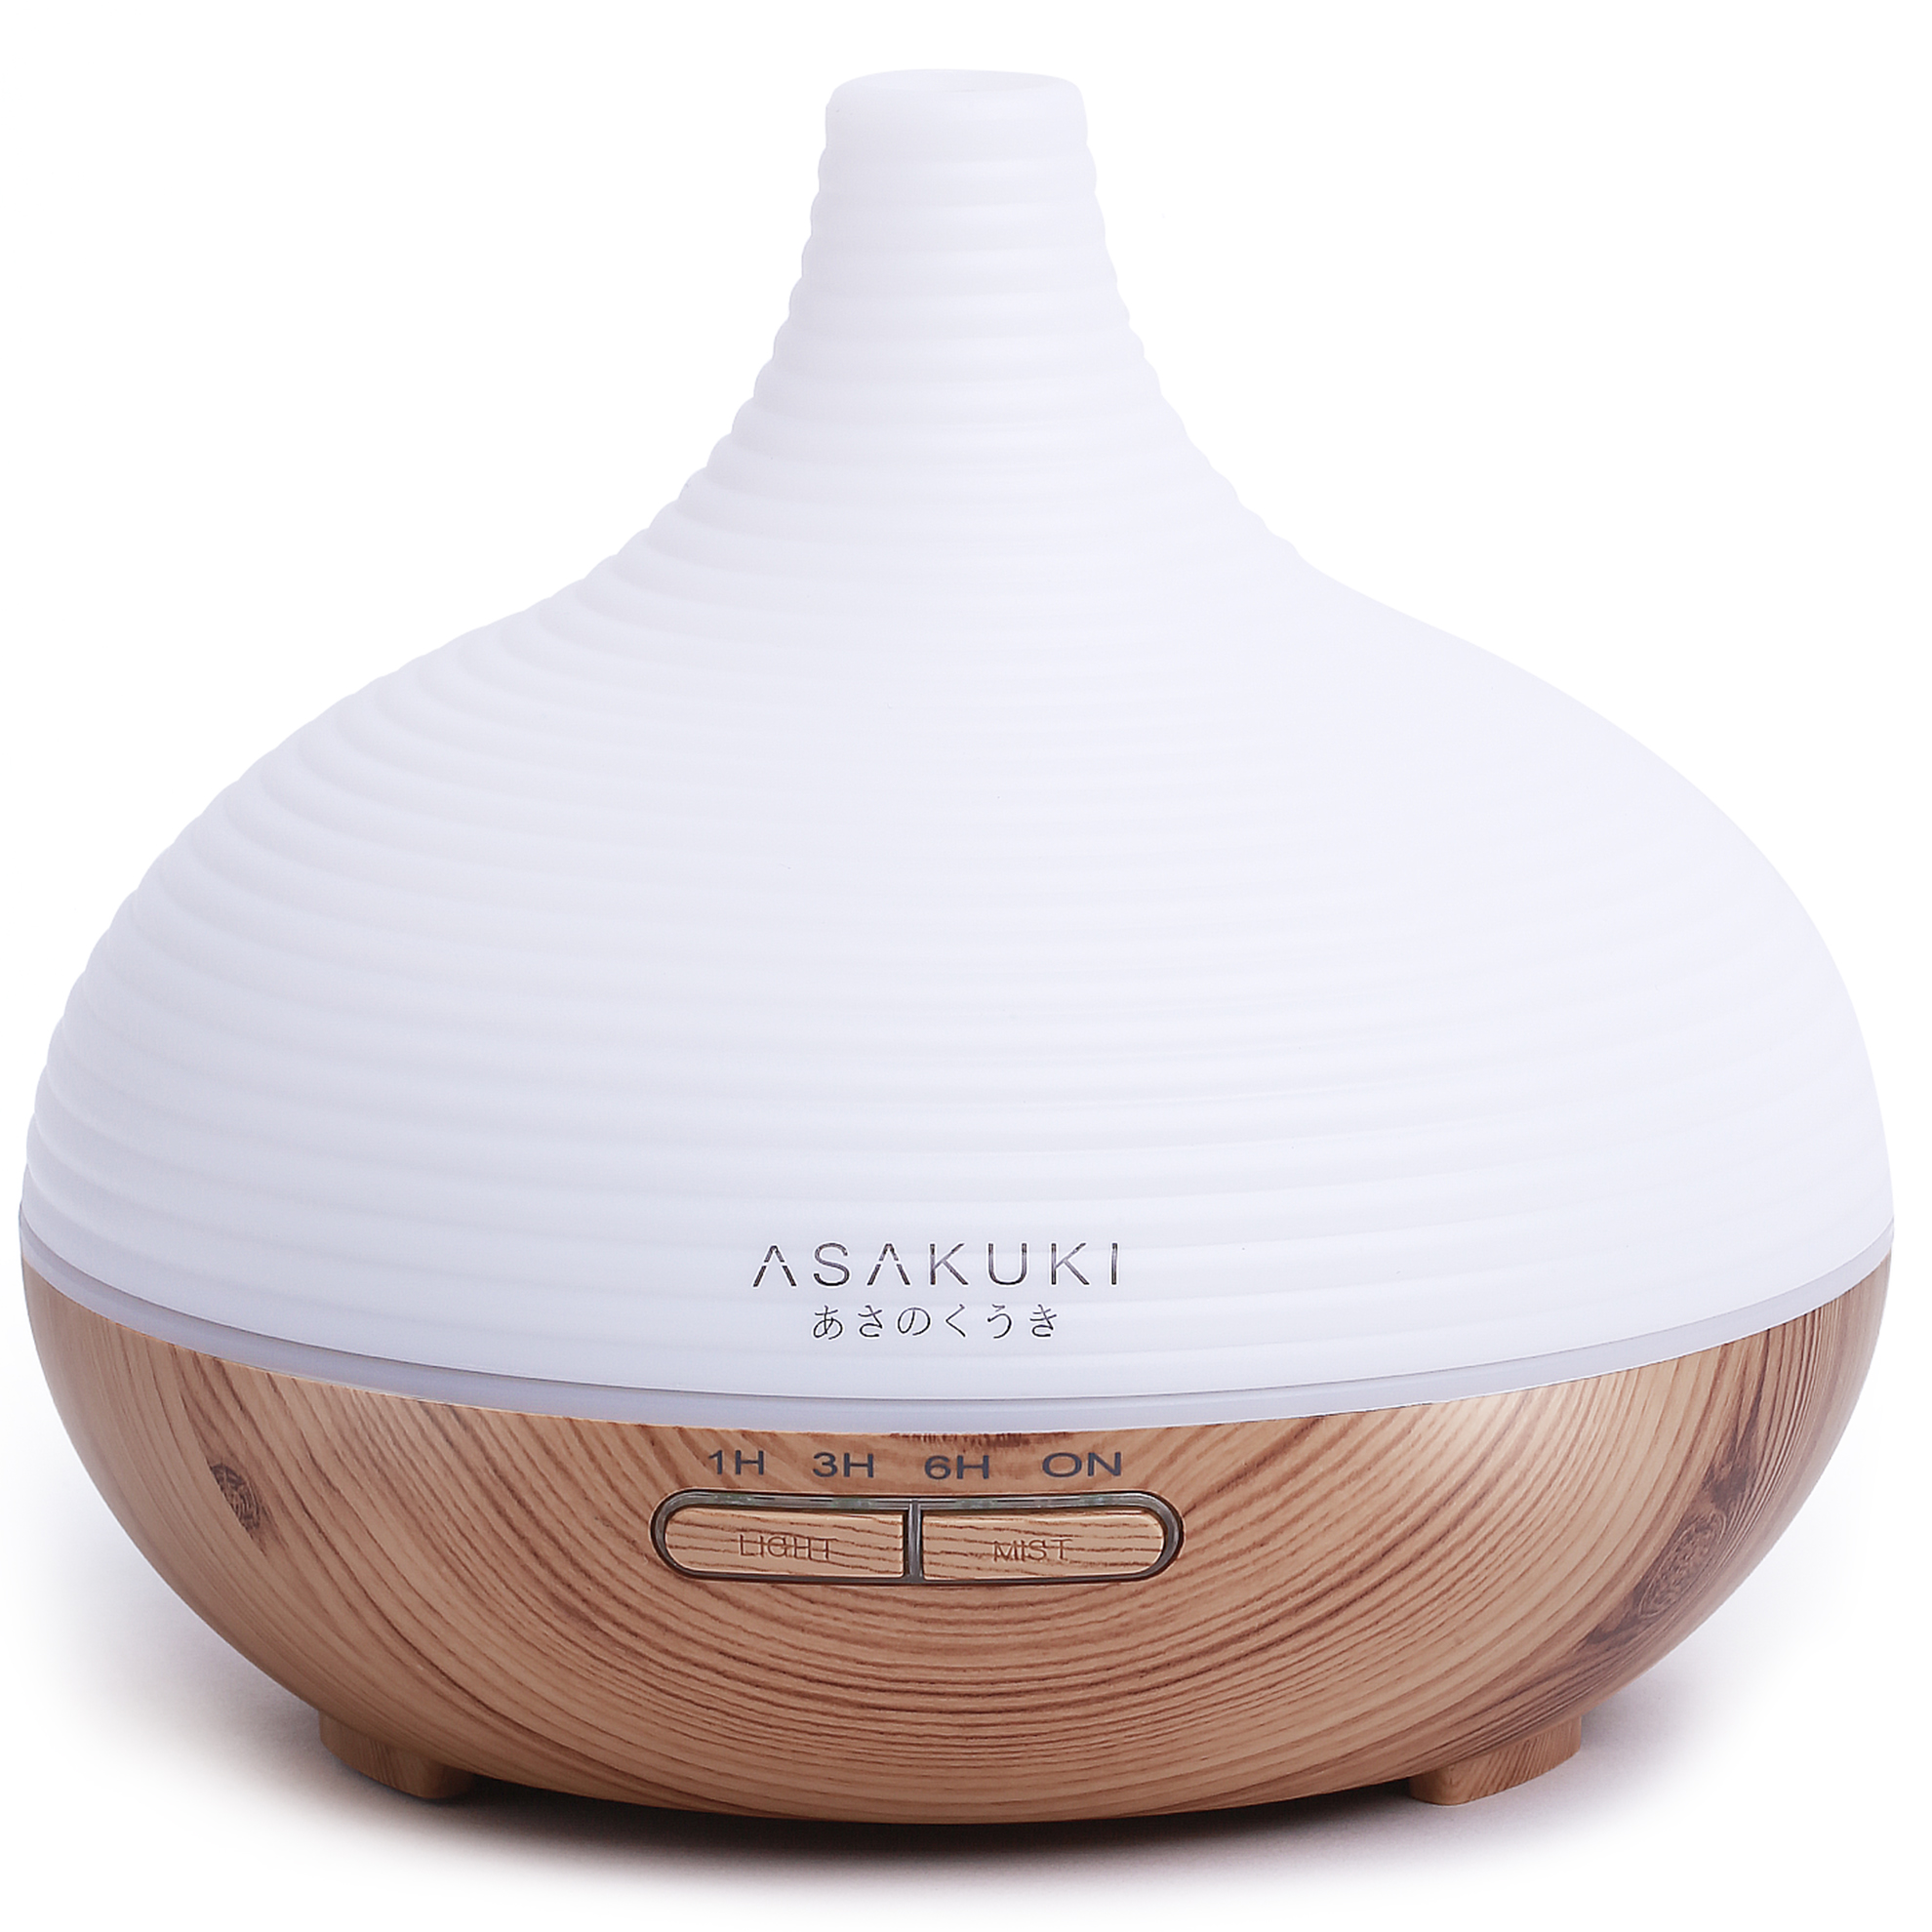 ASAKUKI 300ml Aroma Diffuser für Duftöle, Premium Ultraschall  Luftbefeuchter Aromatherapie Öle Diffusor mit 7-farbigem LED-Licht